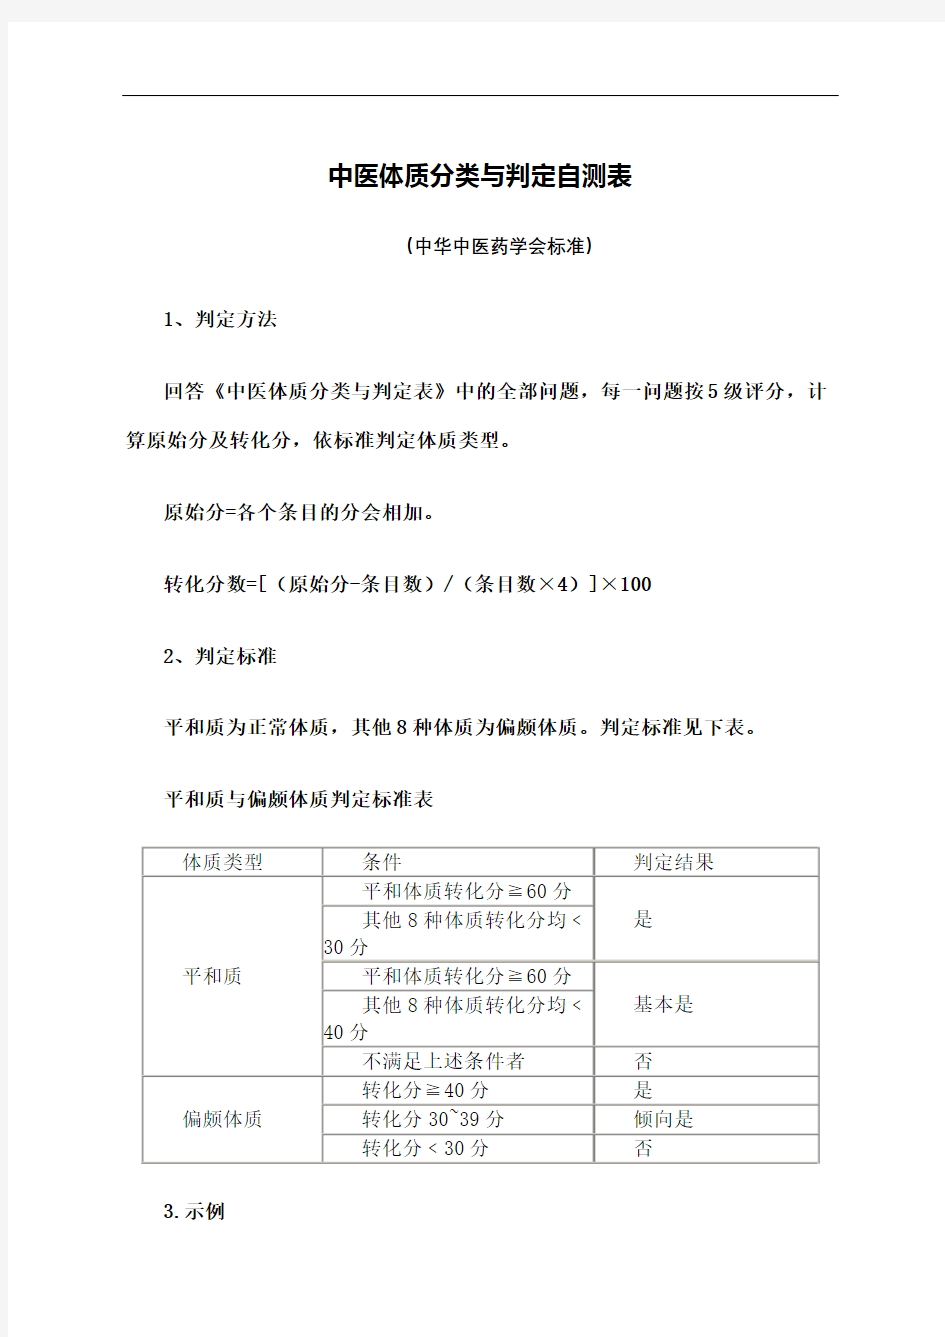 中医体质辨识标准评分标准(终审稿)